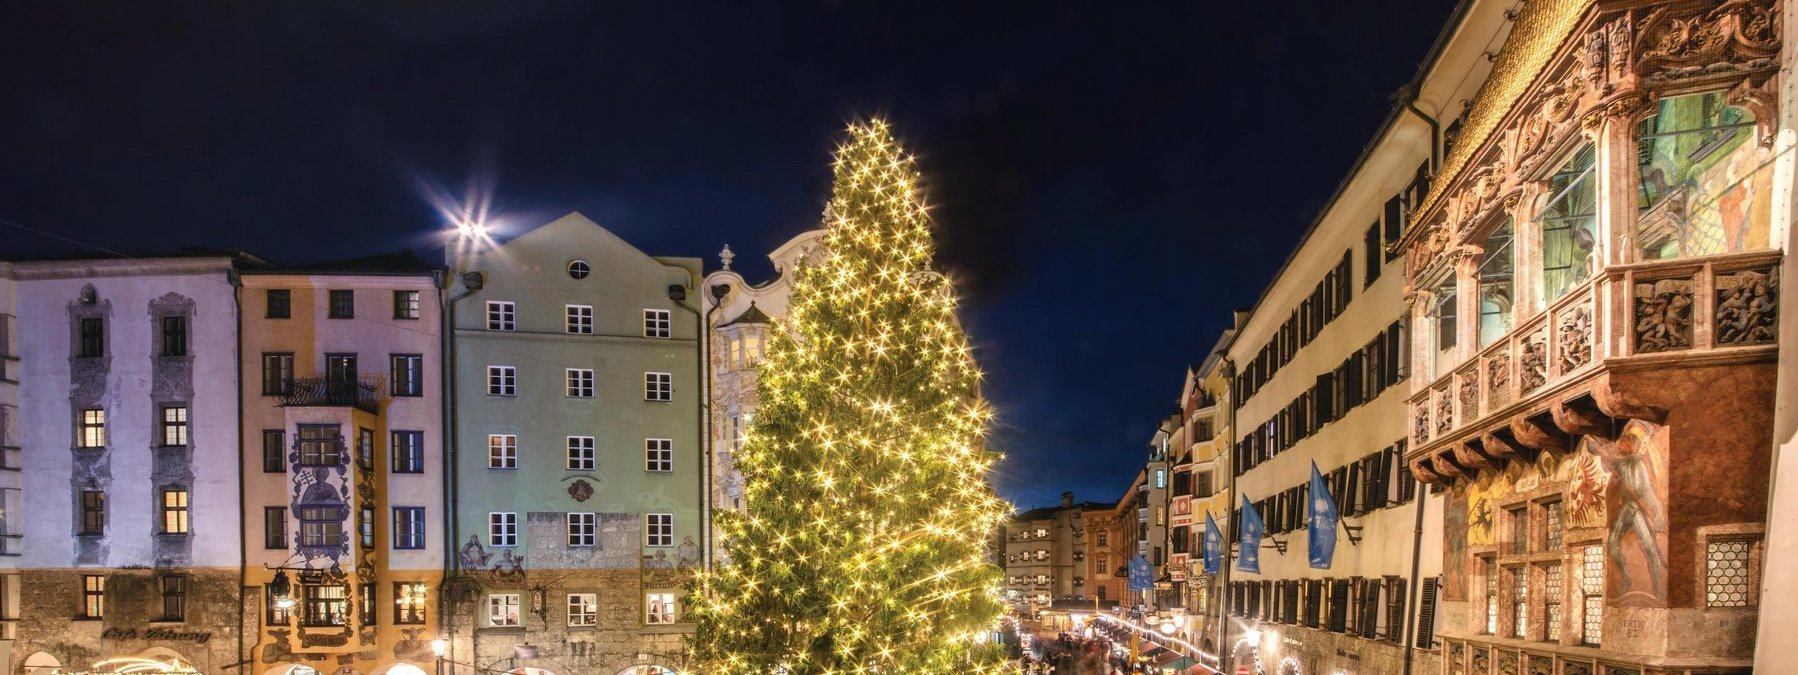 Der Christkindlmarkt in der Altstadt von Innsbruck bei Nacht